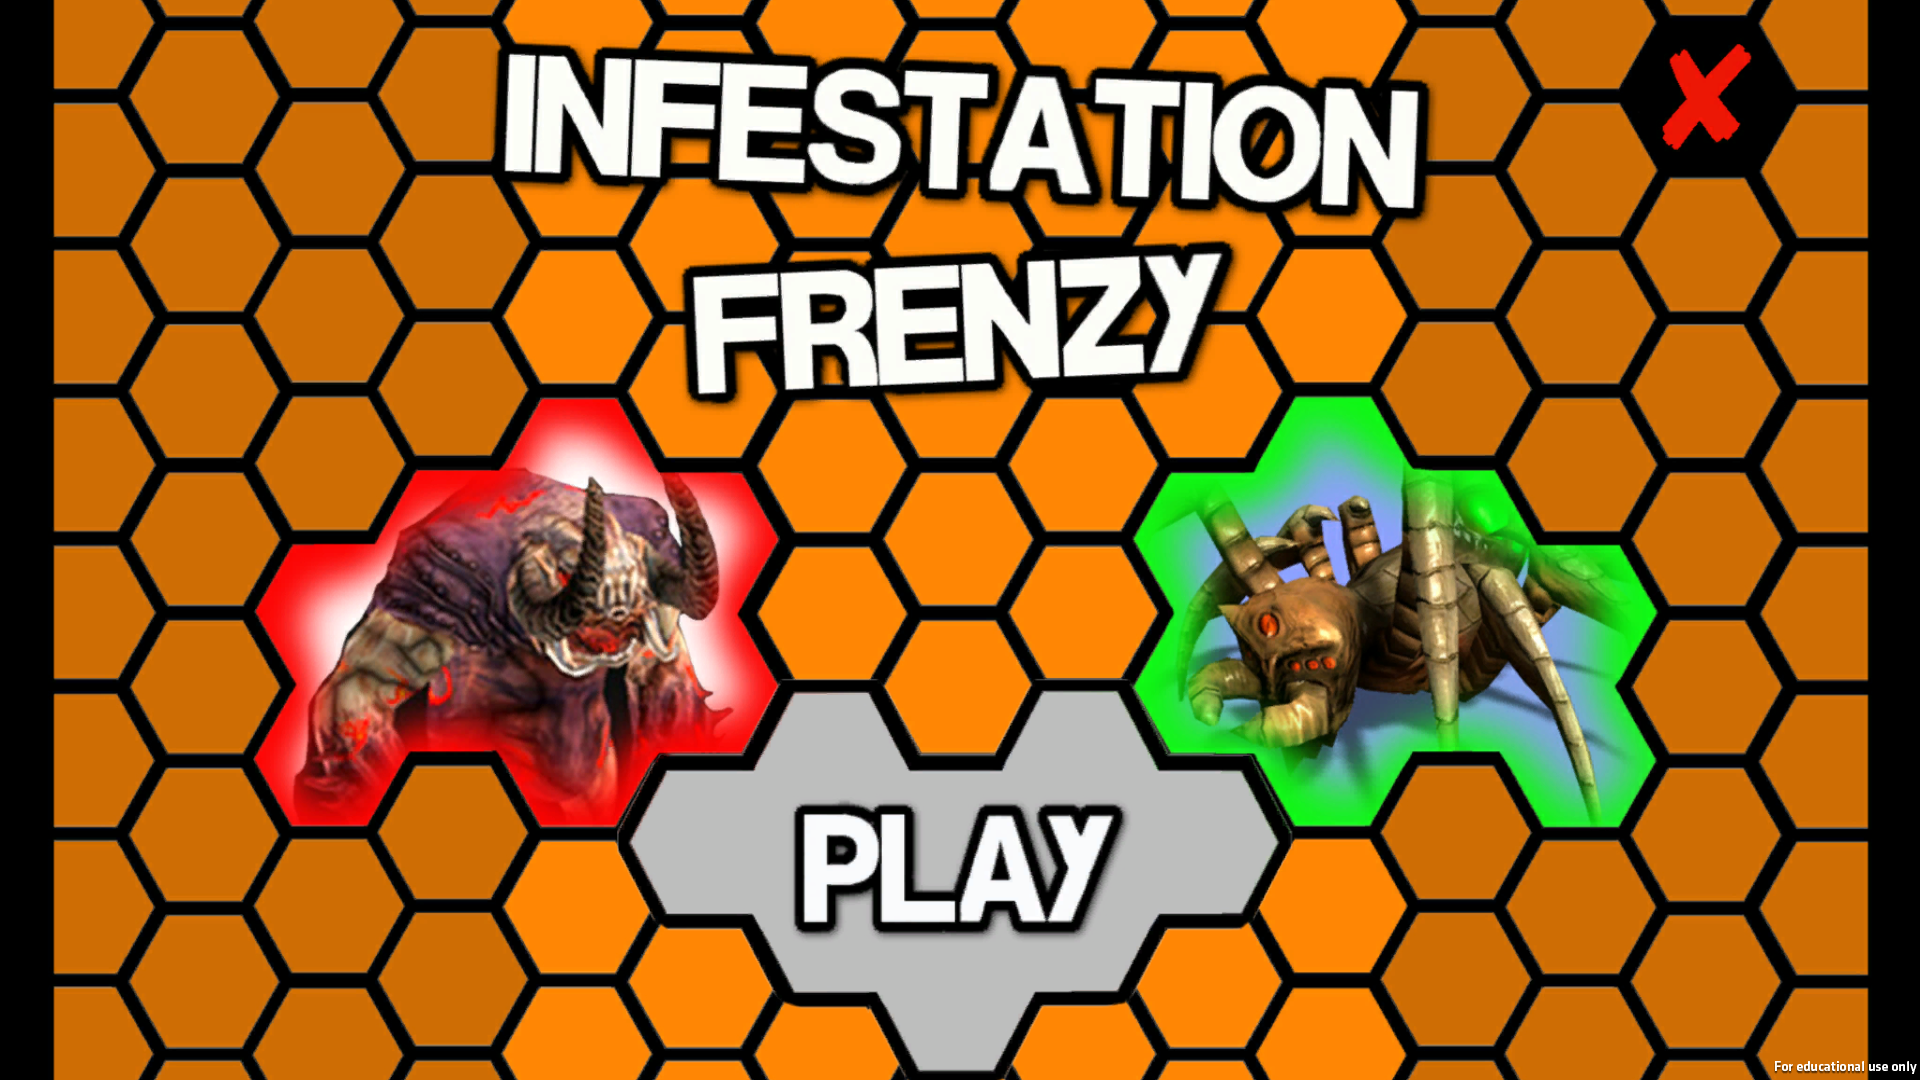 Infestation Frenzy